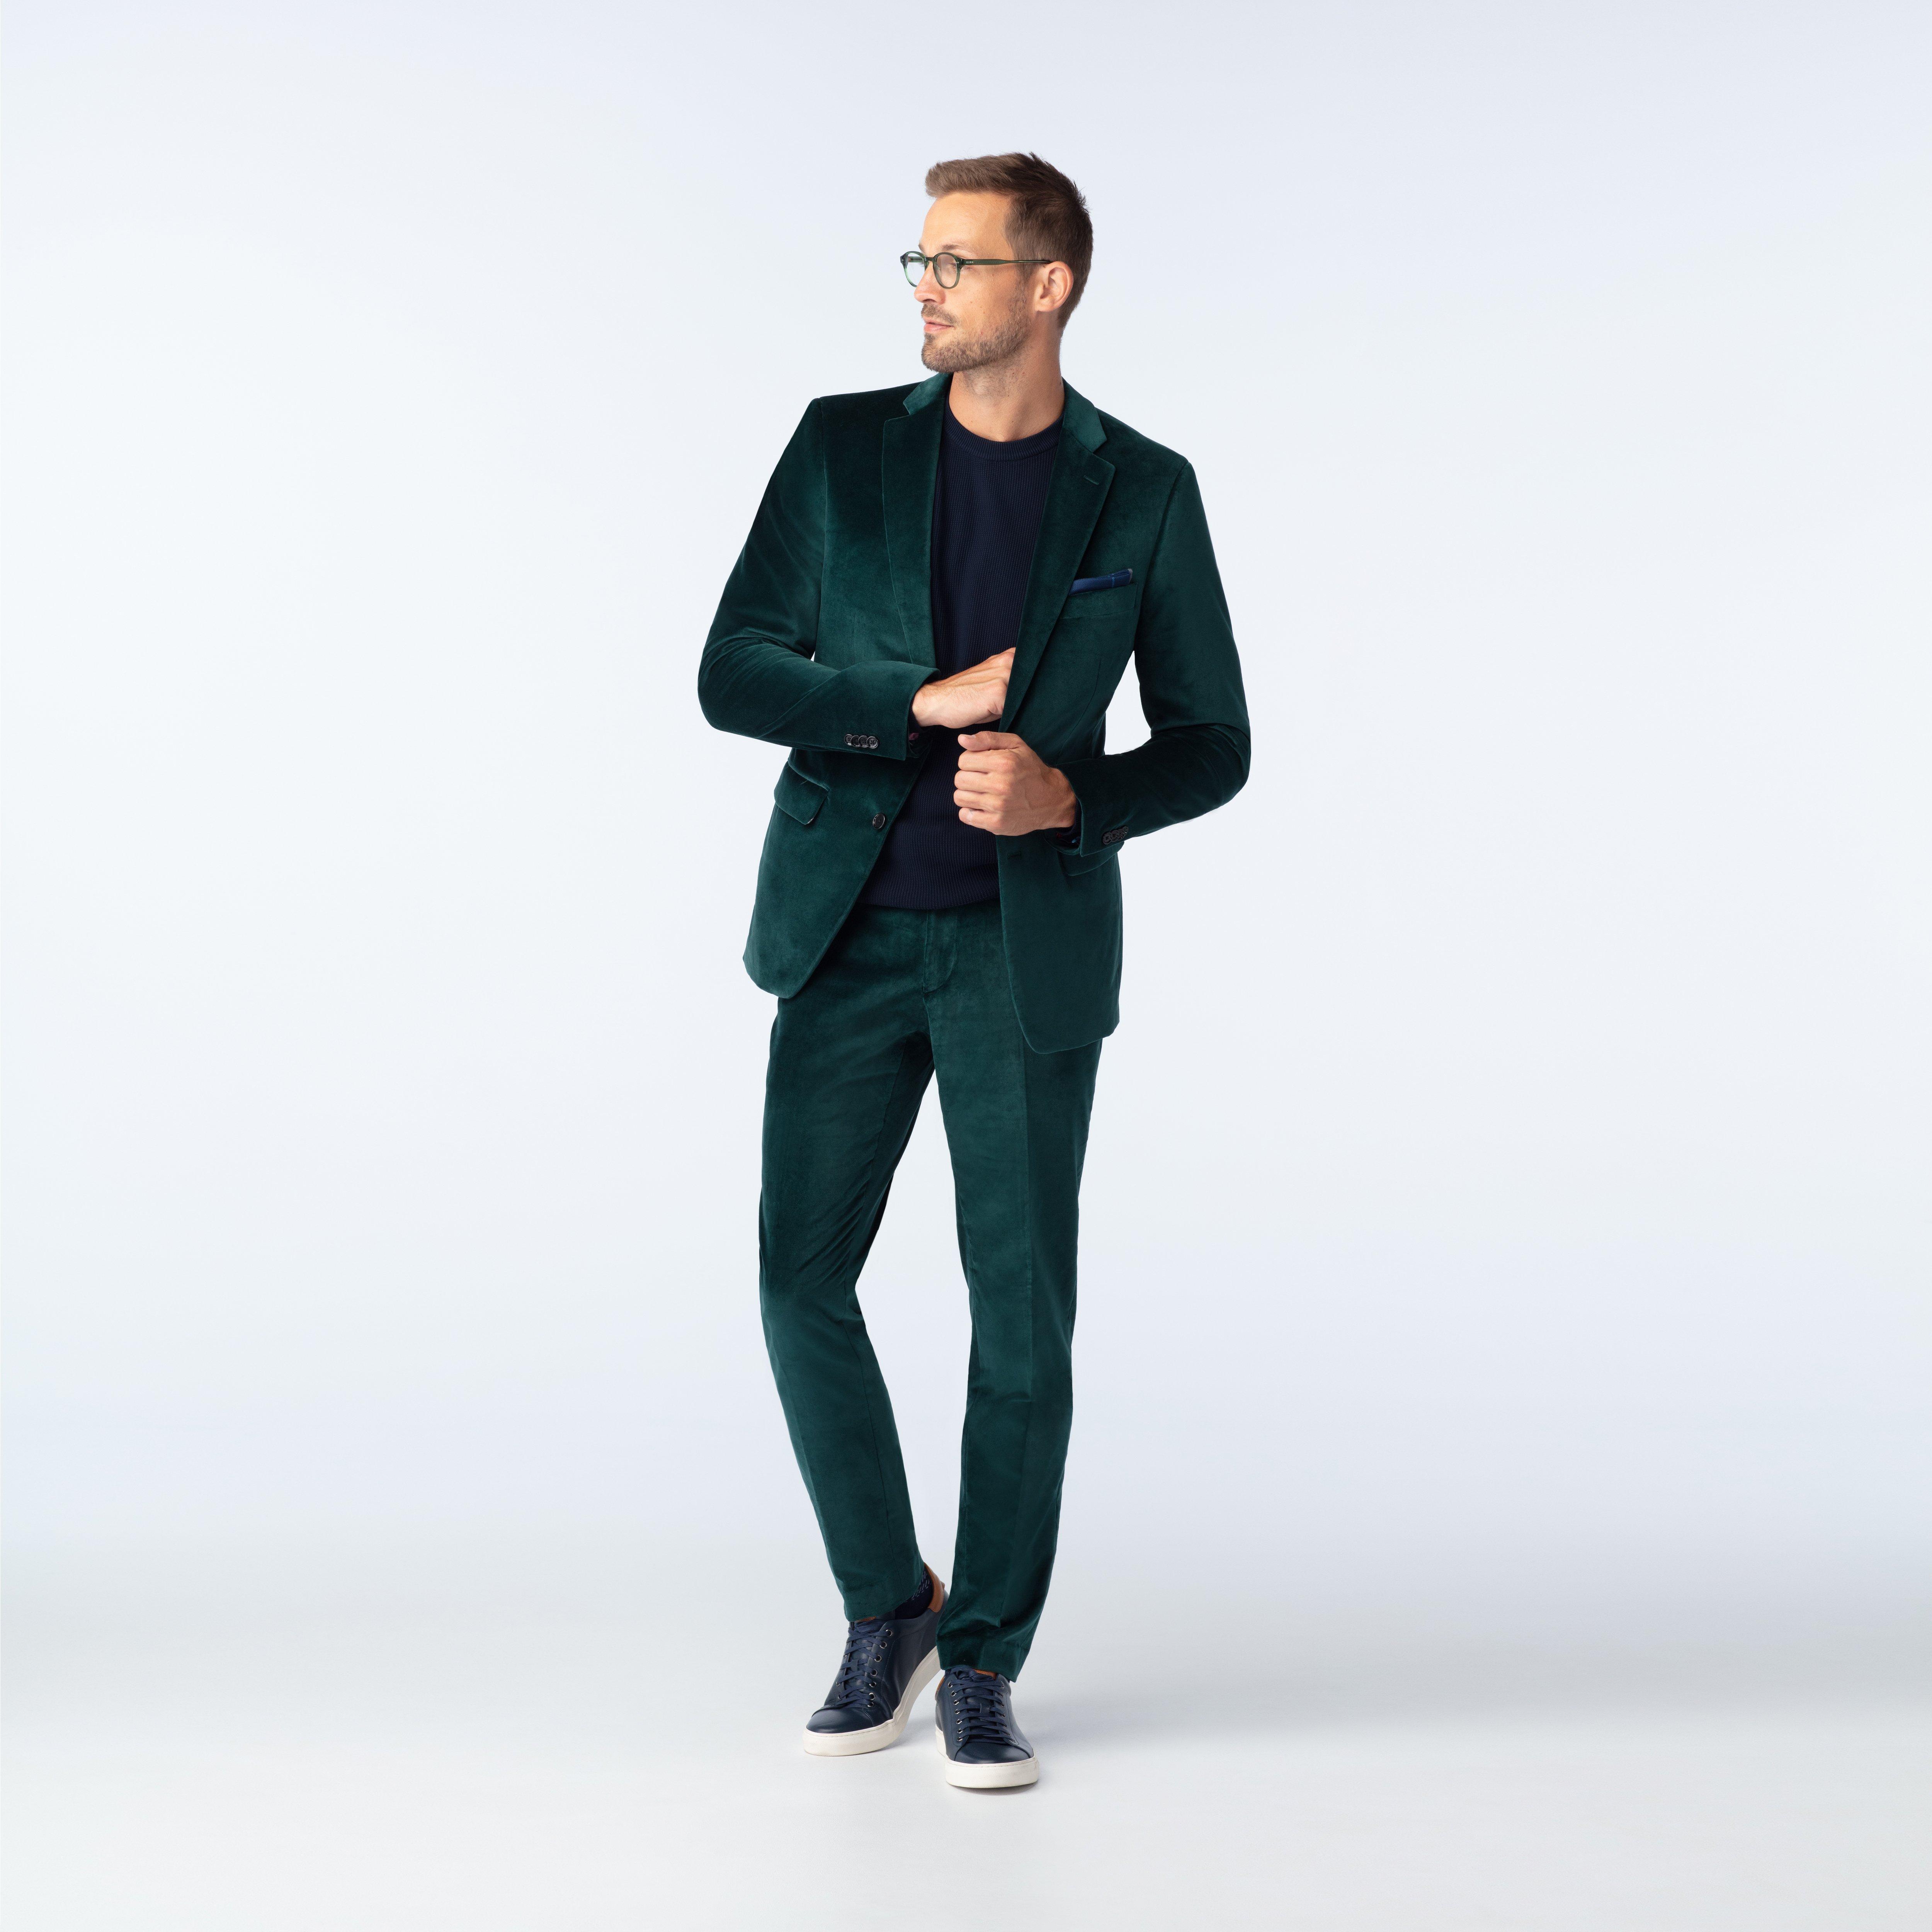 Harford Velvet Emerald Suit, 53% OFF